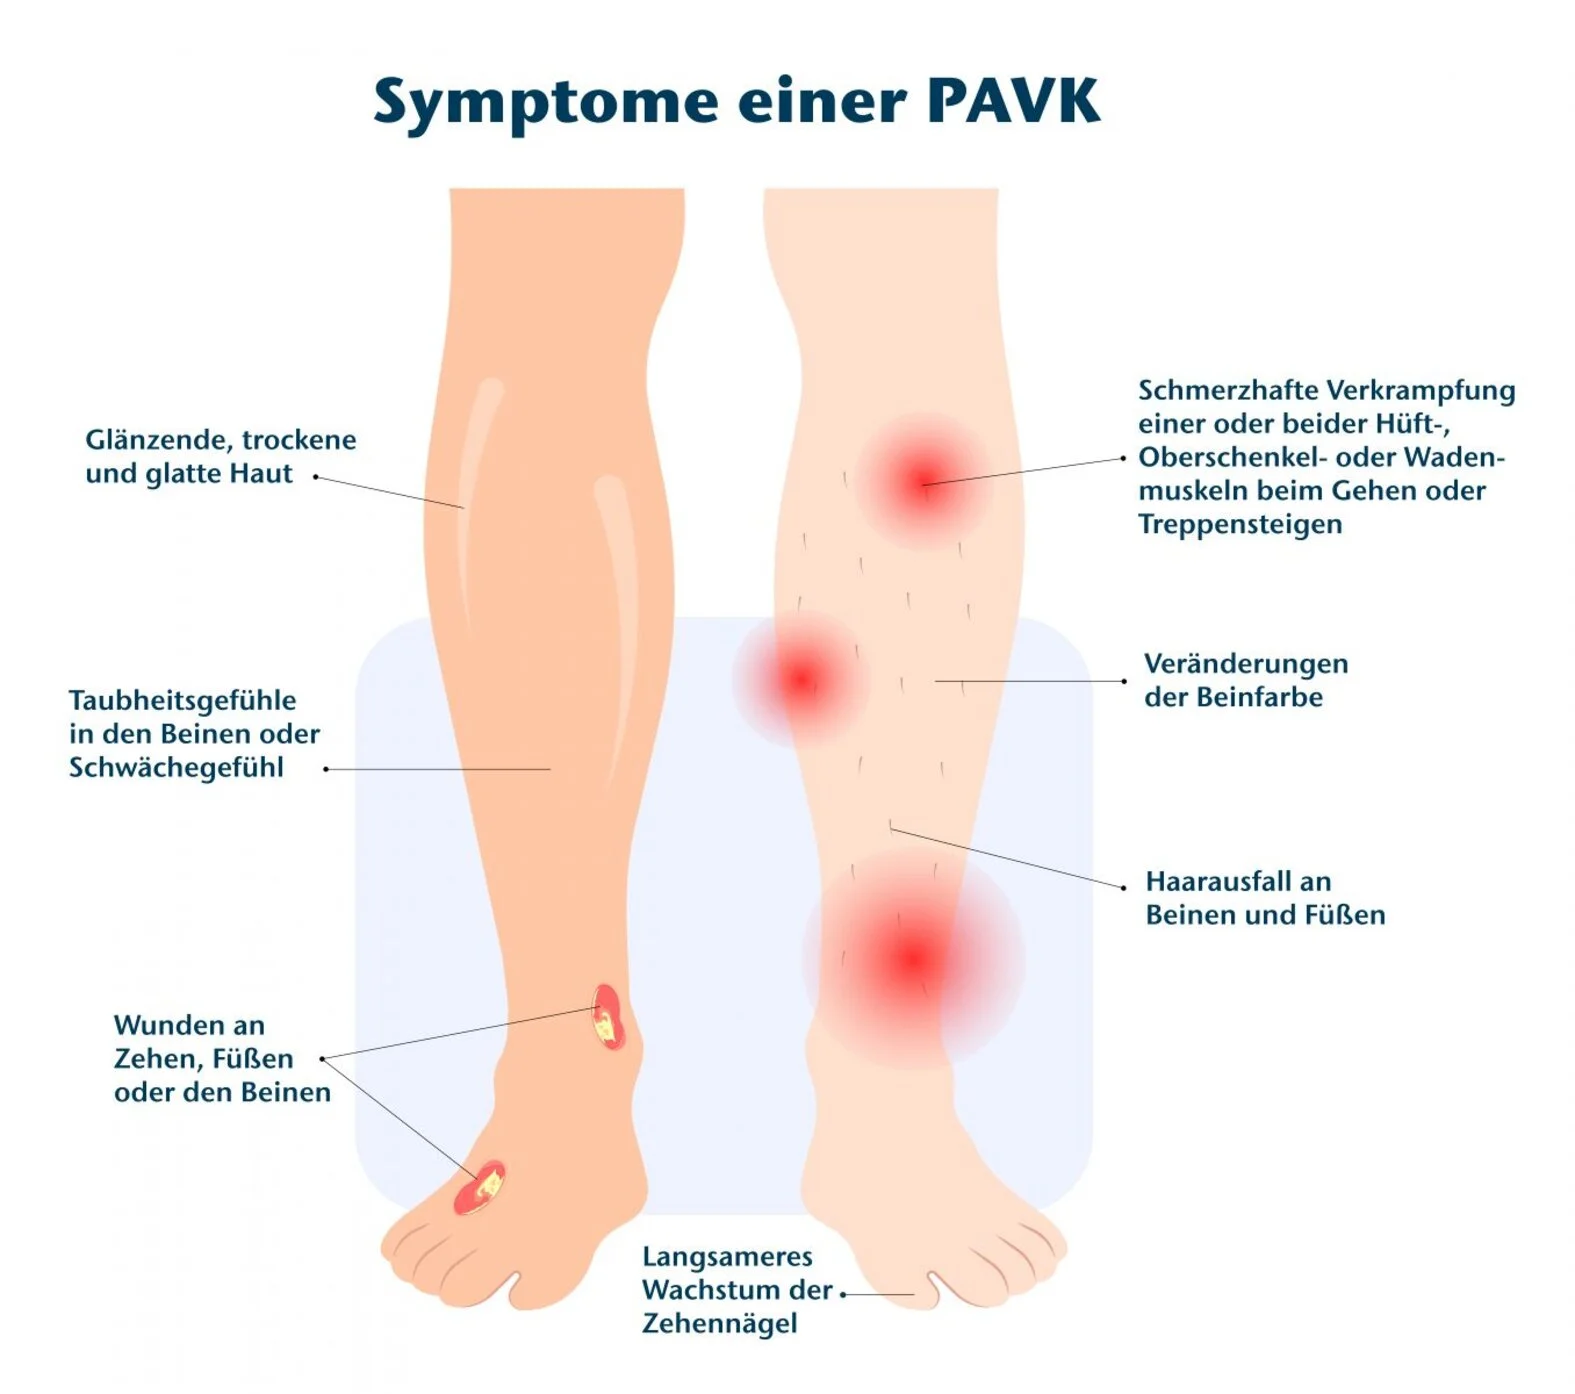 Symptome einer pAVK, grafische Darstellung